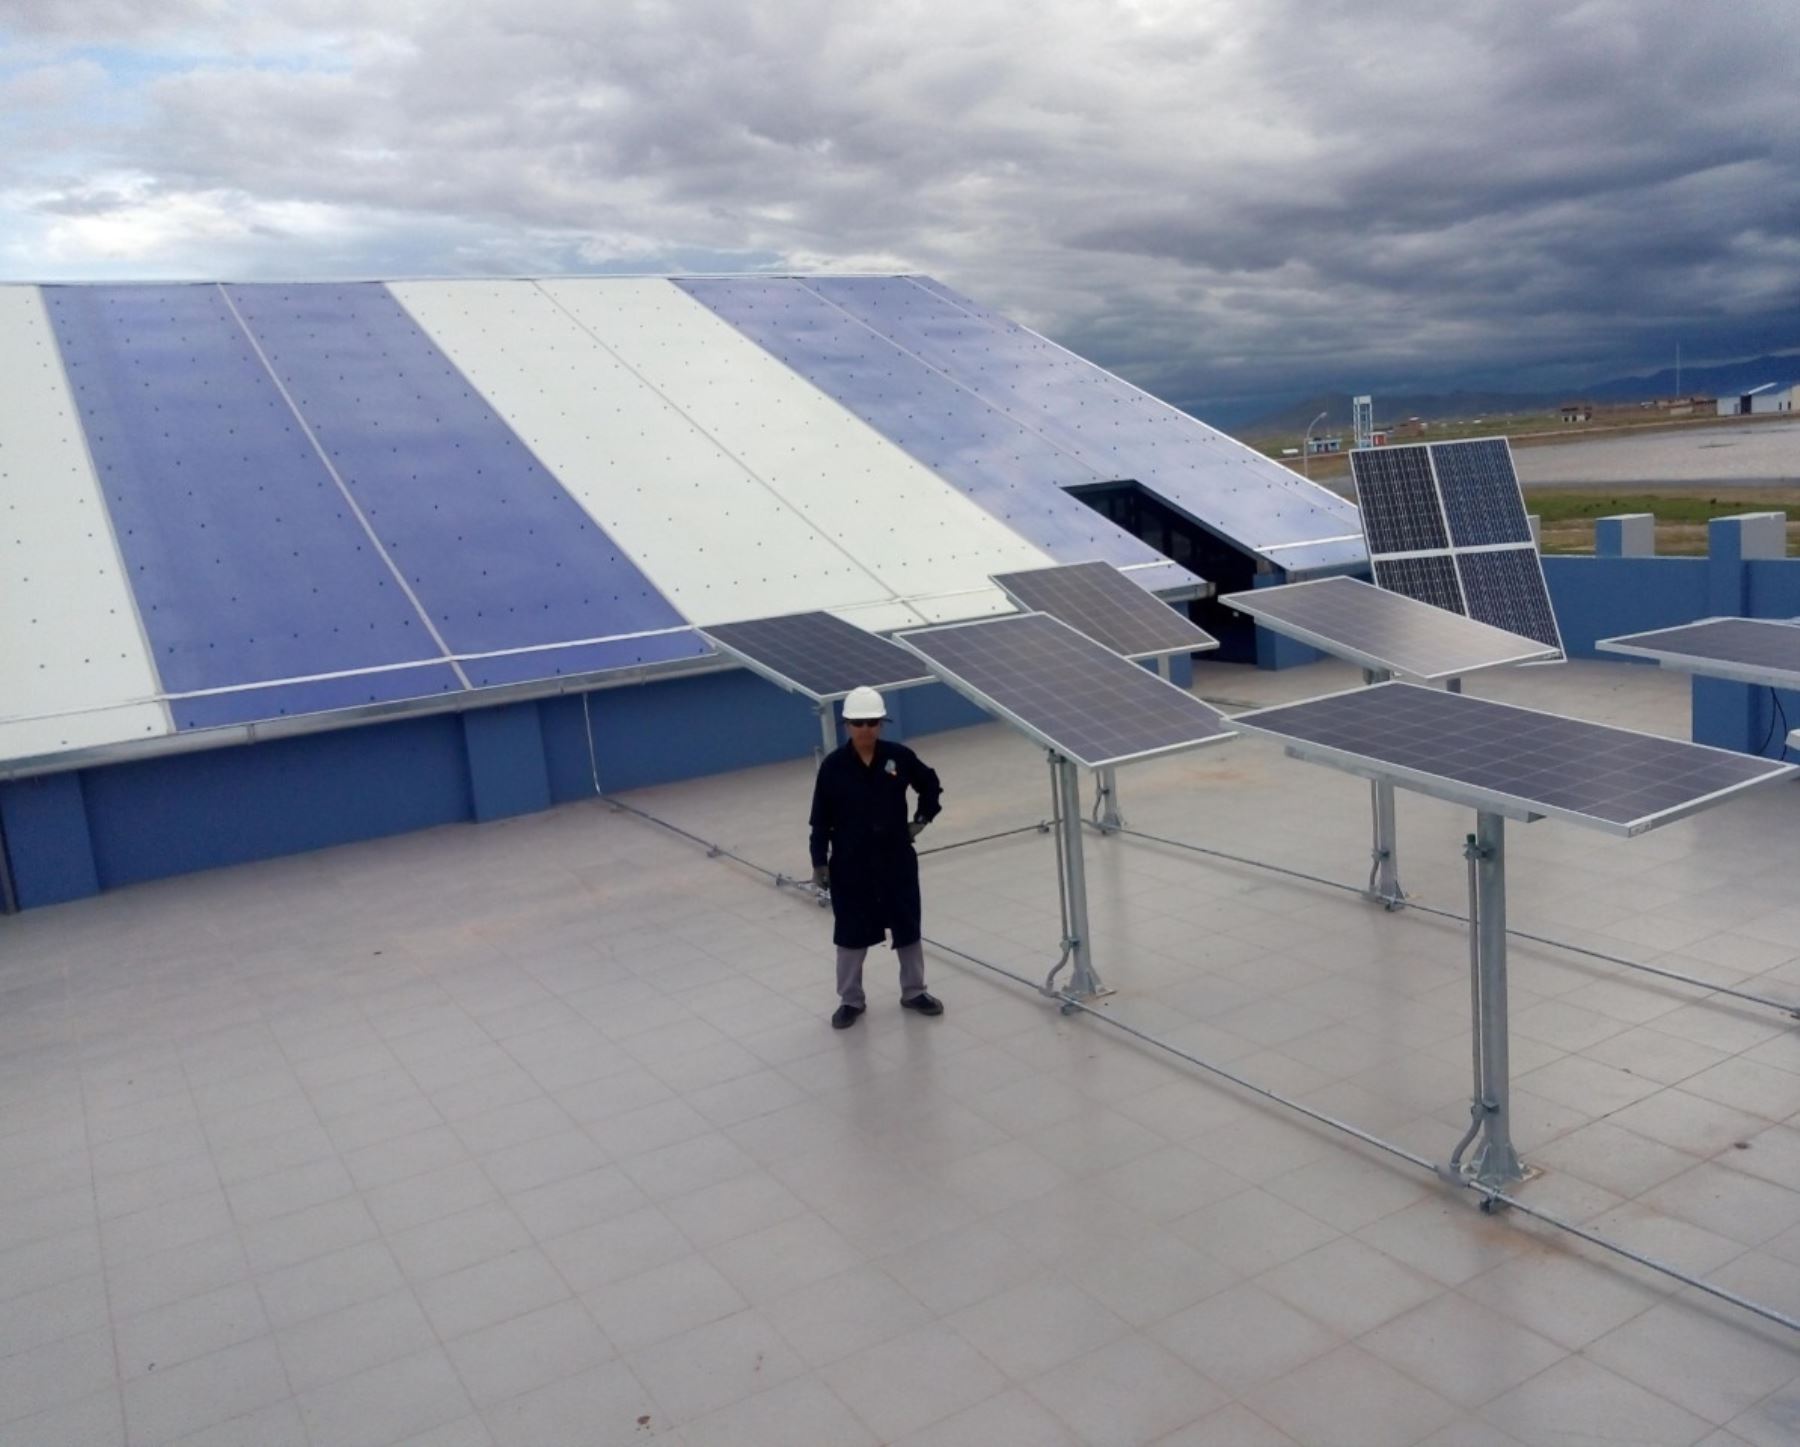 Investigadores de la Universidad Nacional de Juliaca, región Puno, desarrollan una tecnología para brindar energía renovable en zonas rurales del Altiplano. ANDINA/Difusión